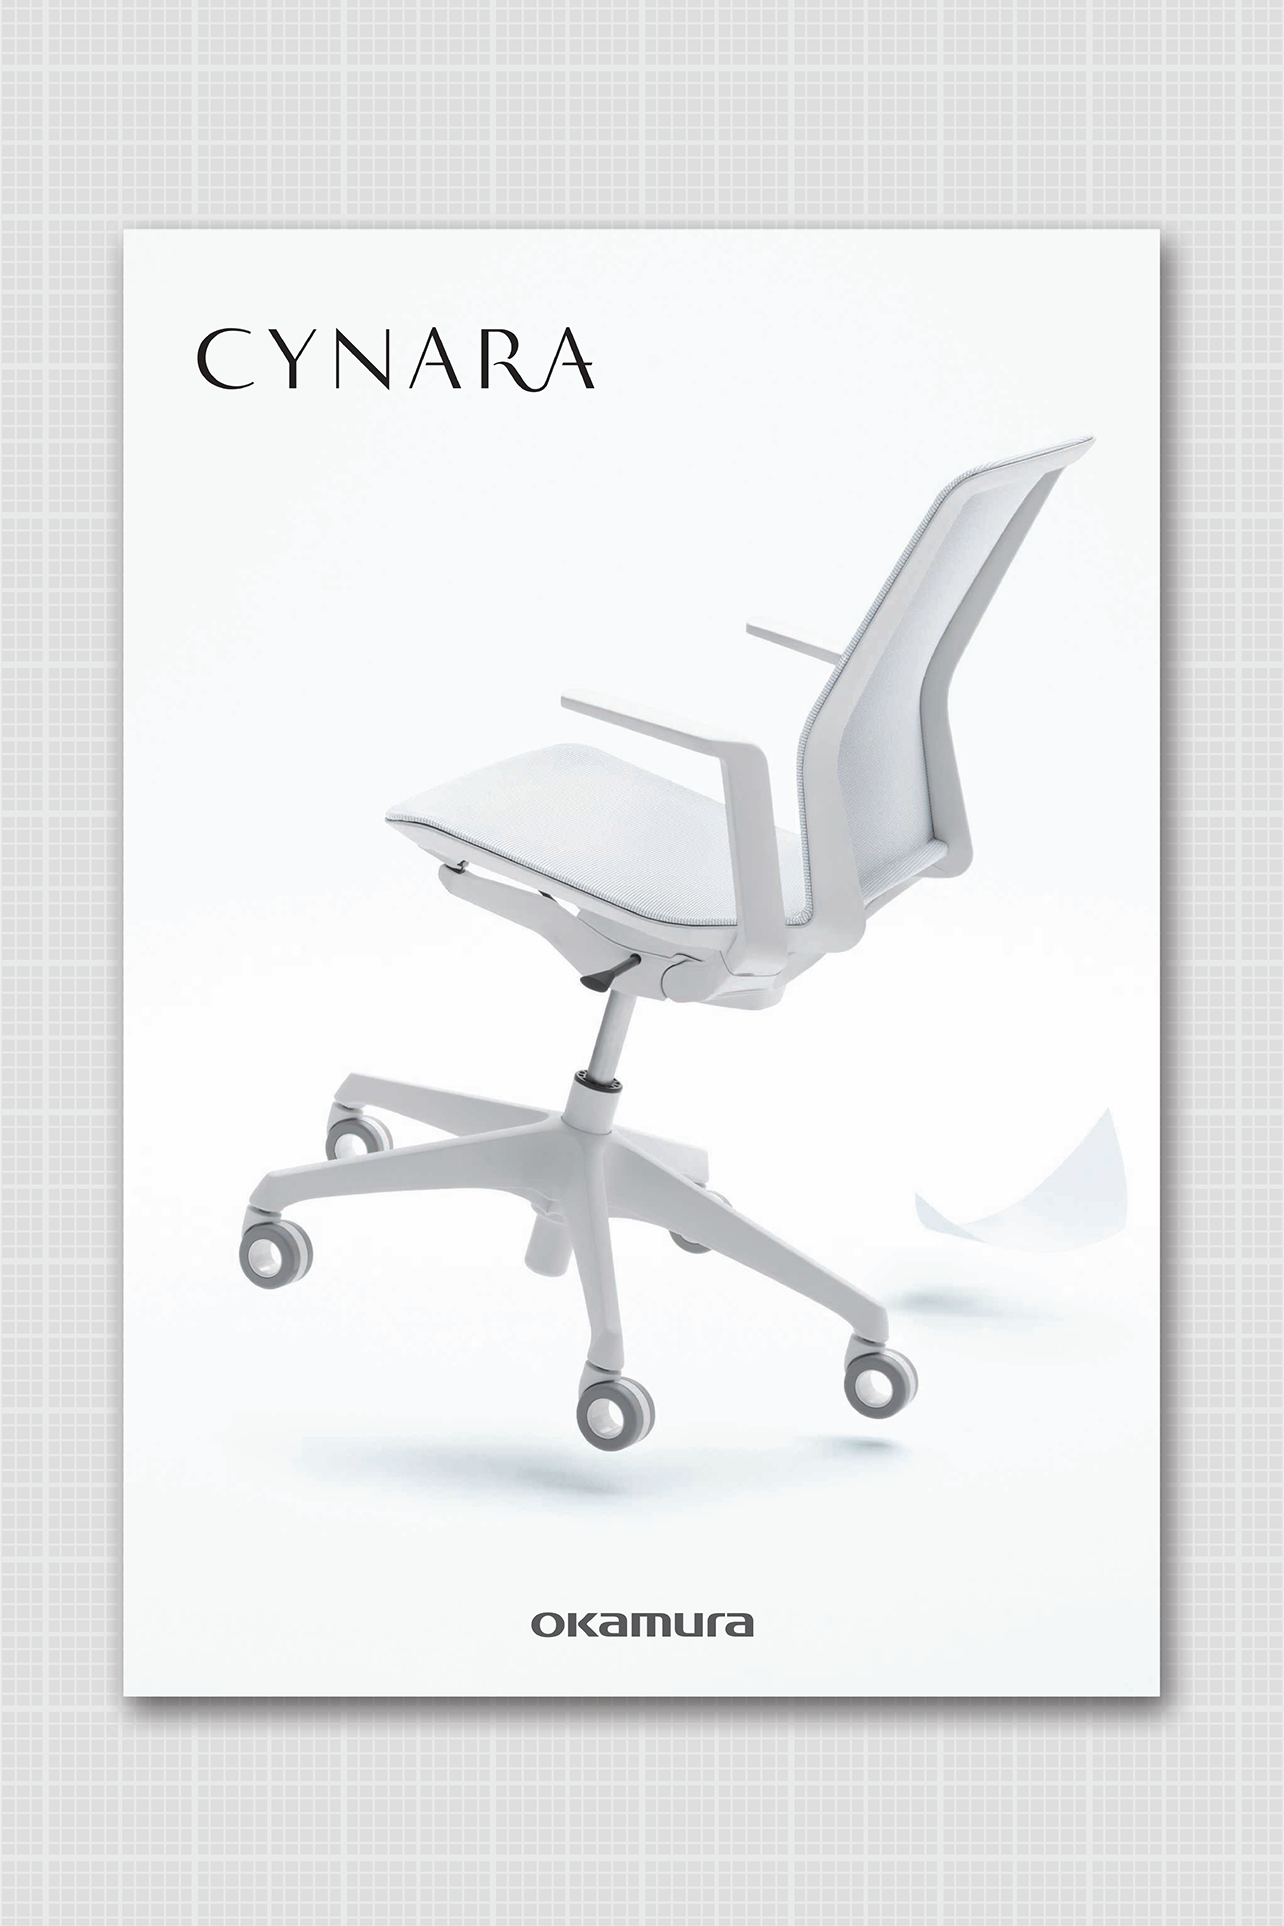 CYNARA Brochure